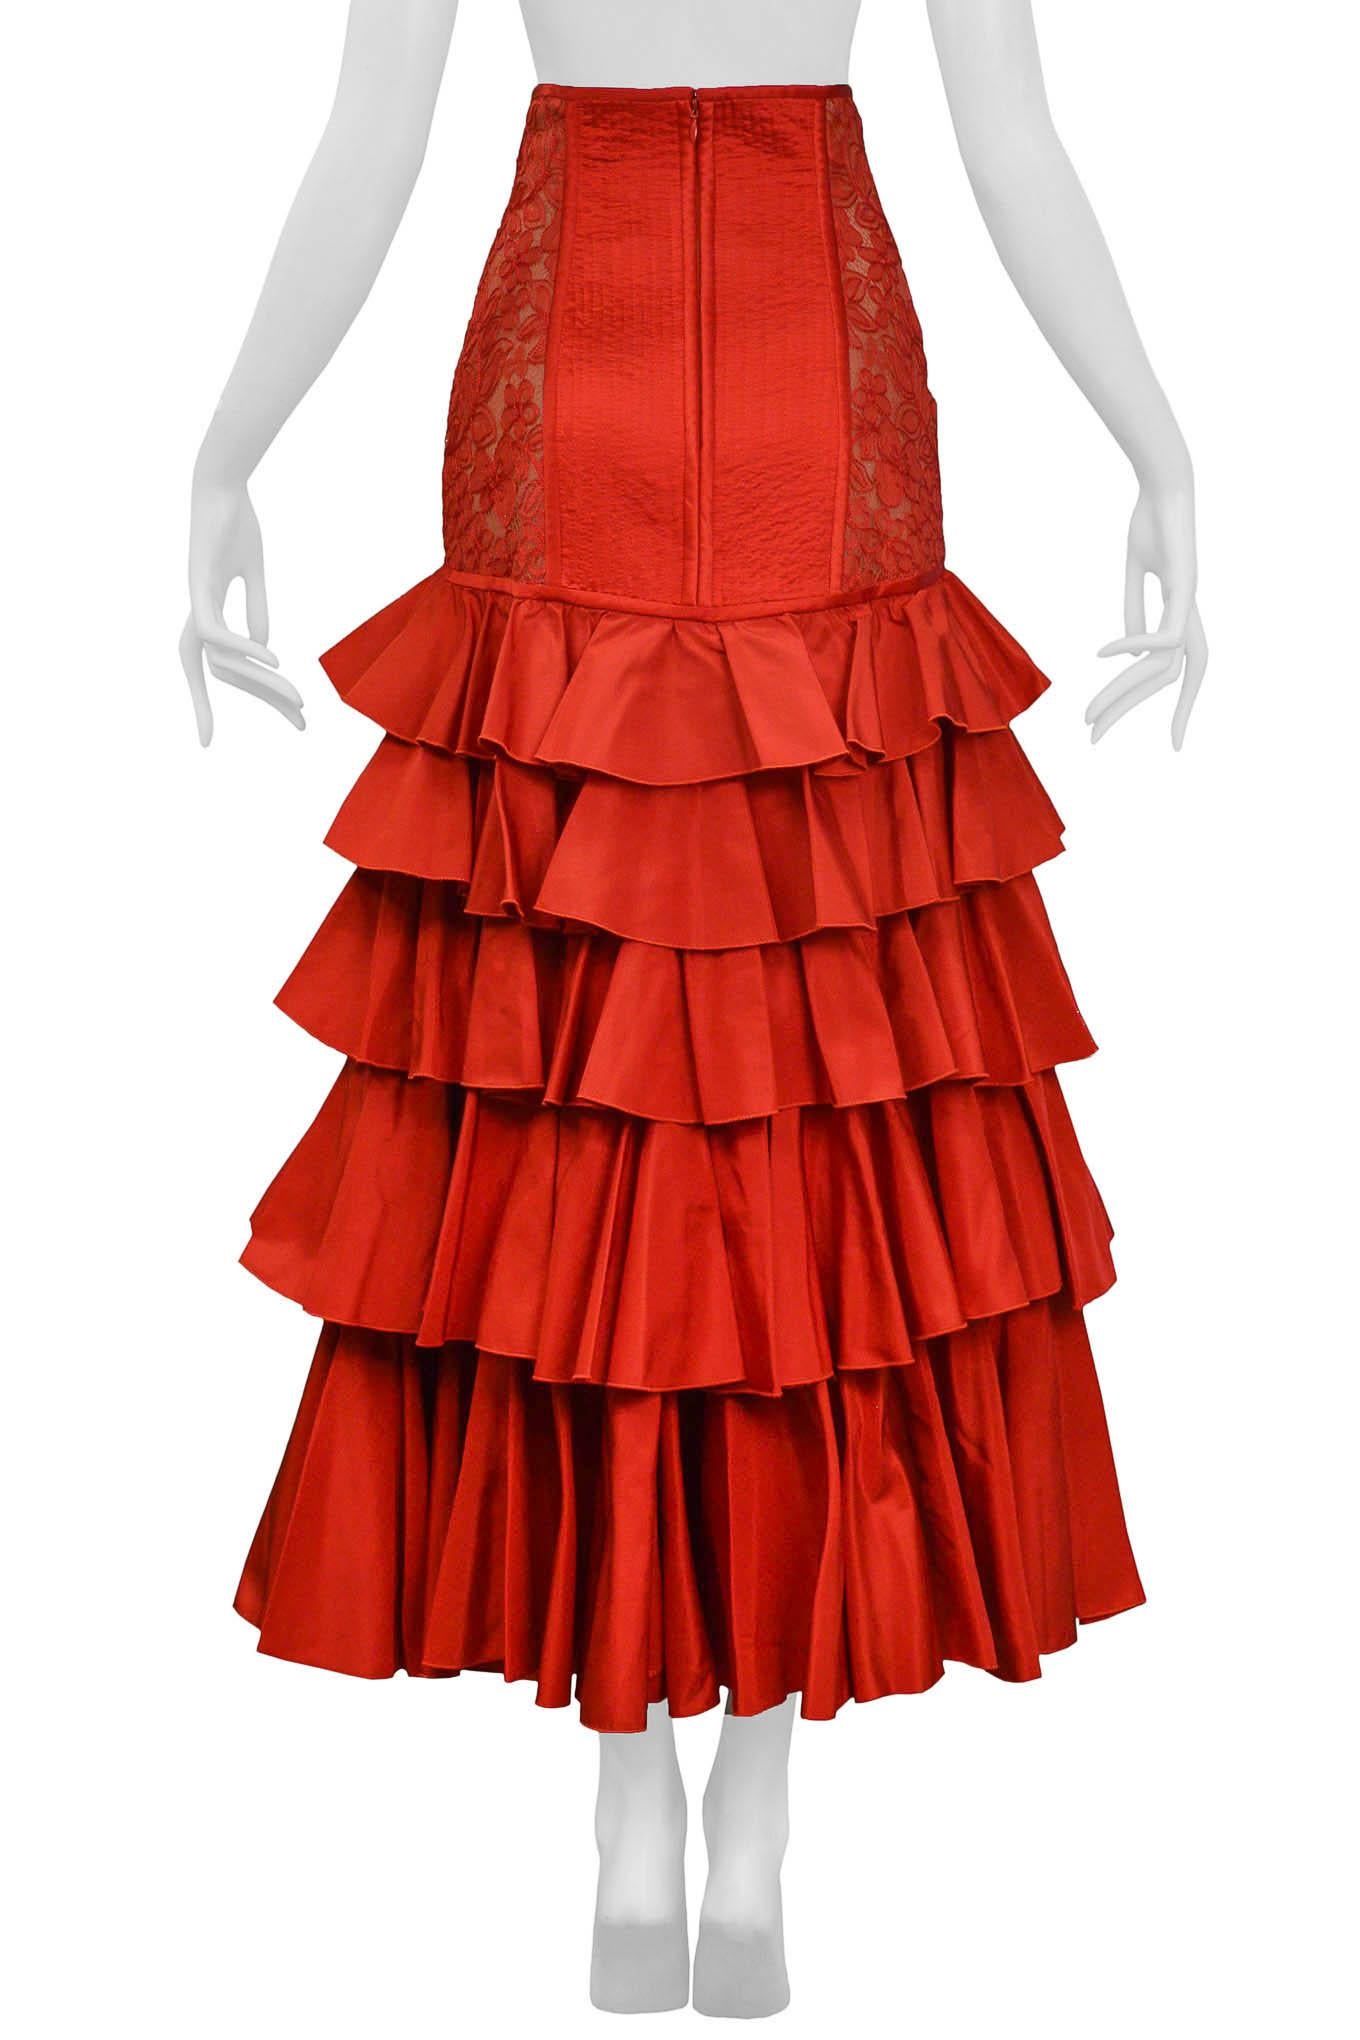 Women's Valentino Red Ruffle Ball Gown Skirt